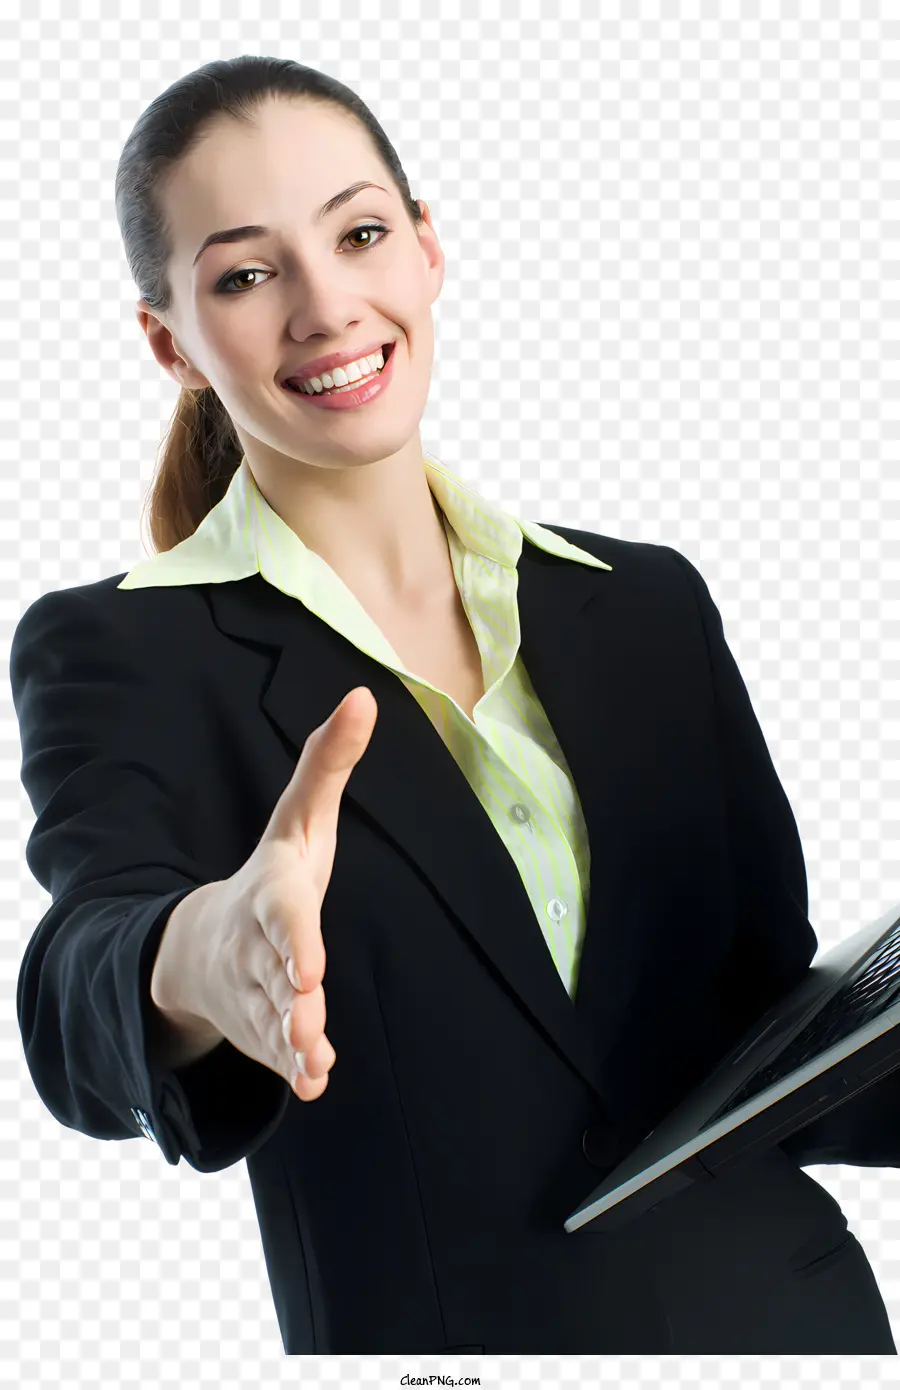 business Frau - Geschäftsfrau im schwarzen Anzug mit Laptop, Daumen hoch